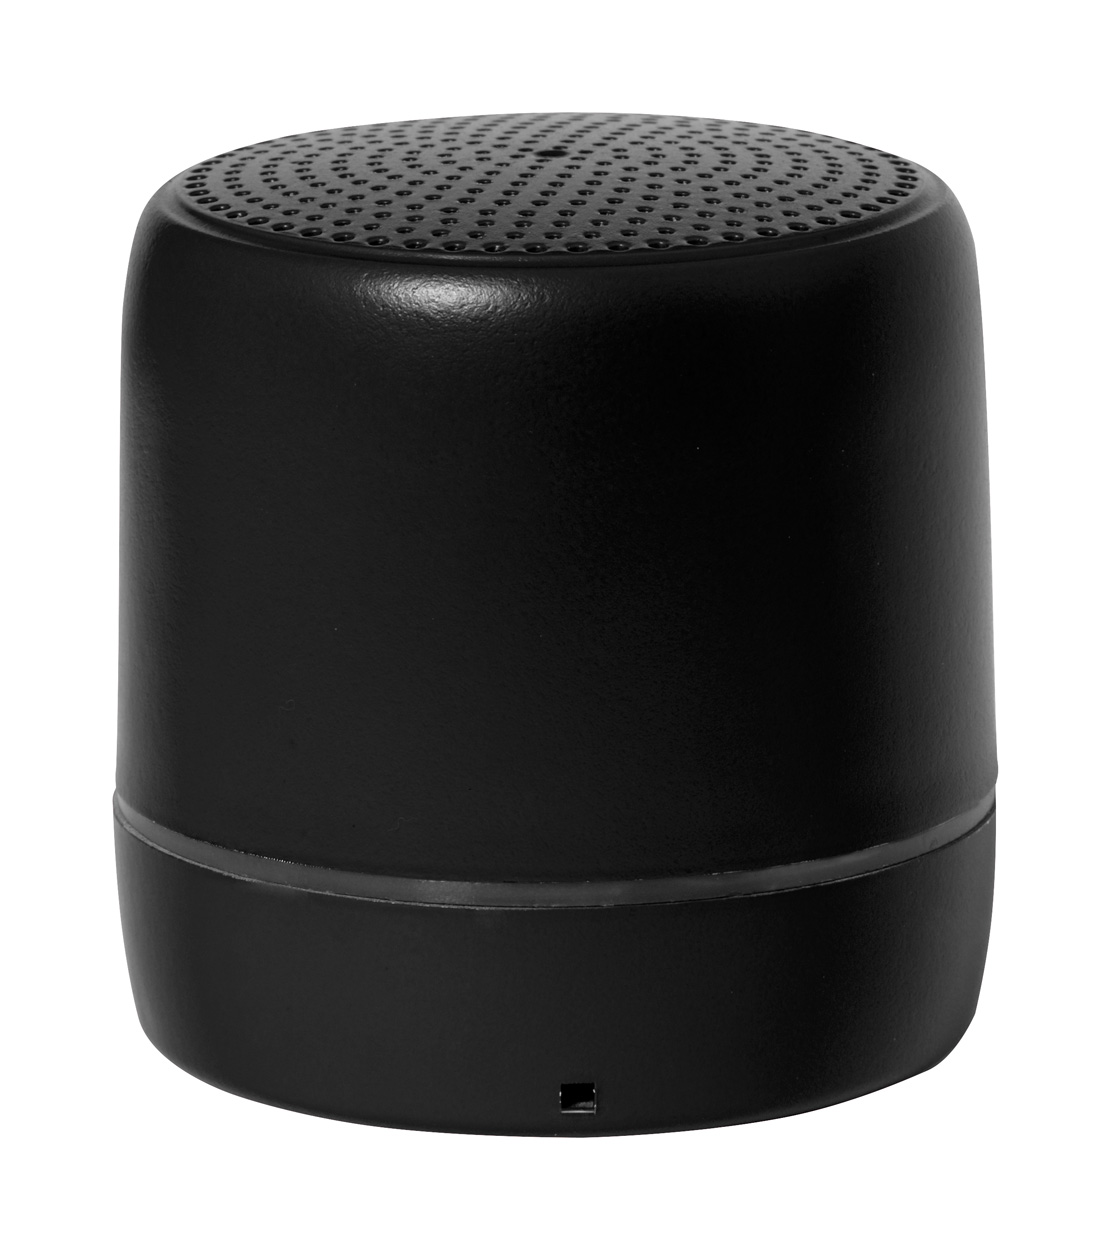 Kucher bluetooth speaker - black